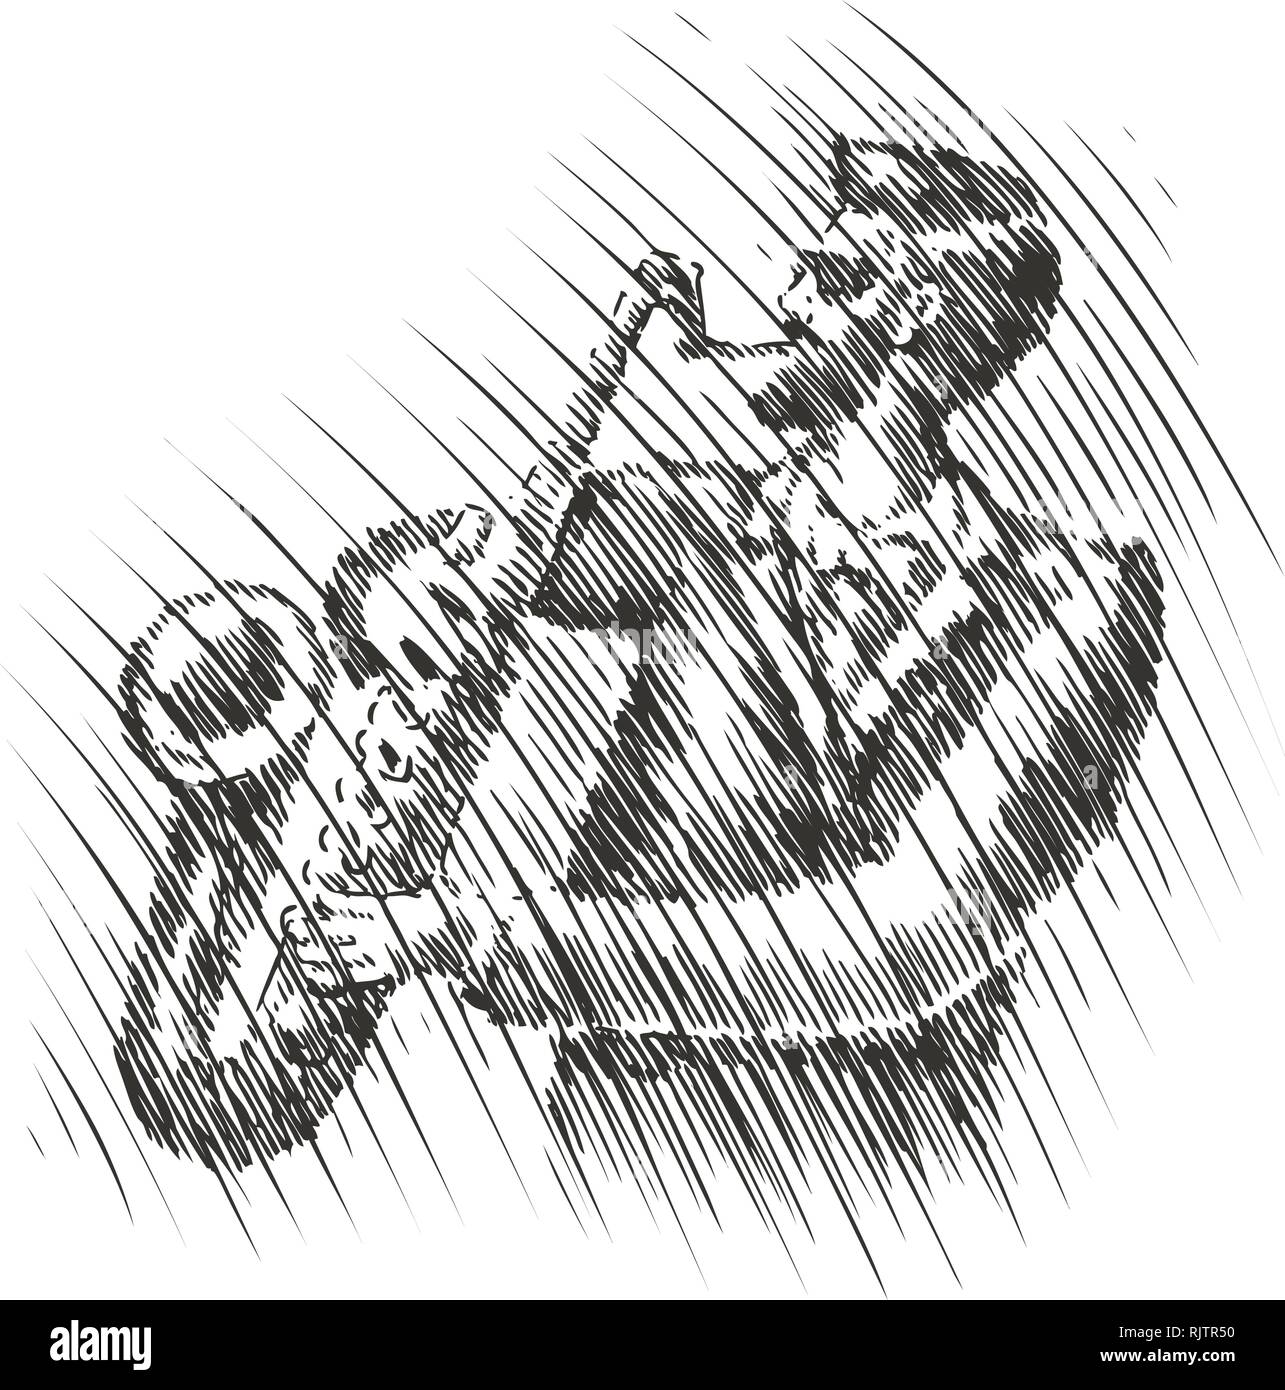 Musicien joue du saxophone. Musique live, festival de musique de croquis. Jazz, Blues vector illustration Illustration de Vecteur